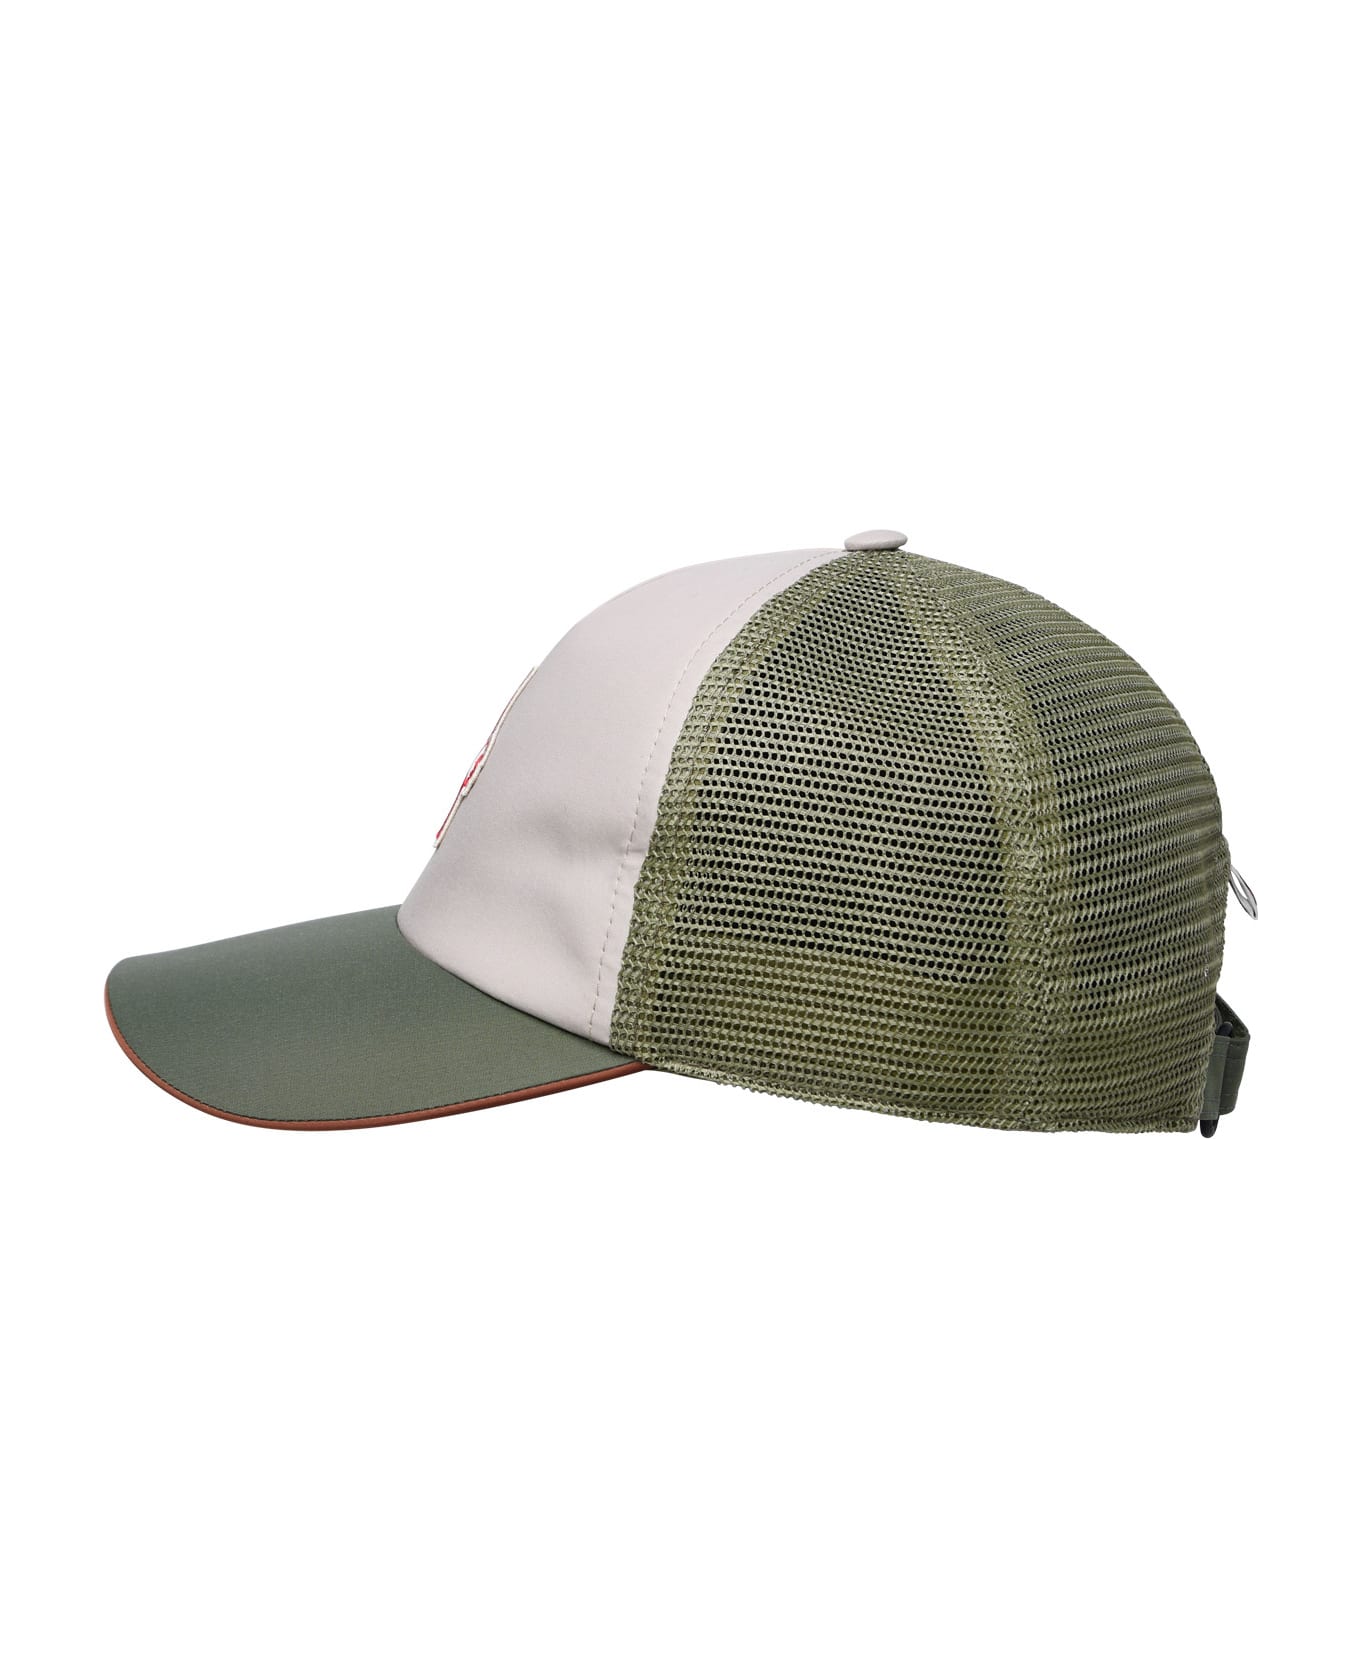 Moncler Grenoble Green Nylon Hat - Green